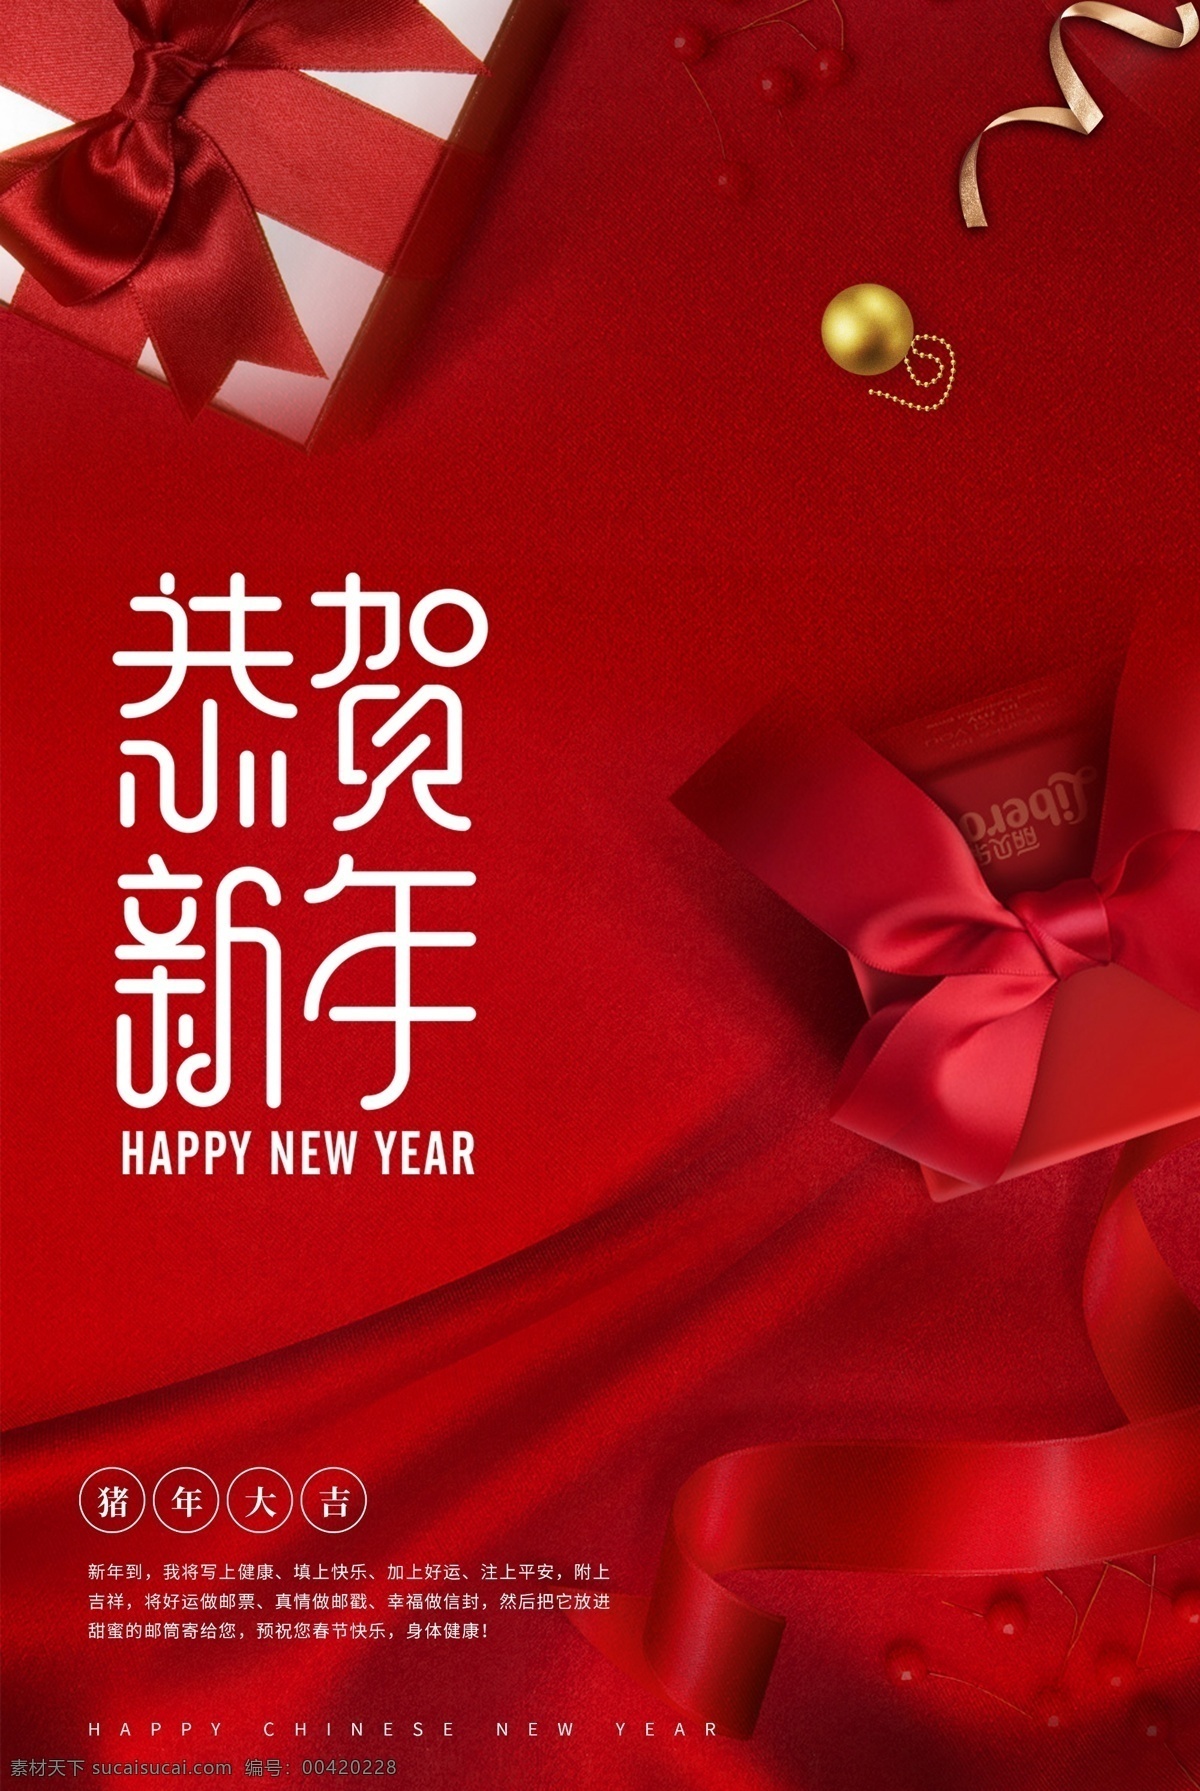 恭贺 新年 红色 大气 新春 海报 恭贺新年 春节 礼物 礼盒 丝绸 绸带 喜庆 新年海报 猪年 2019